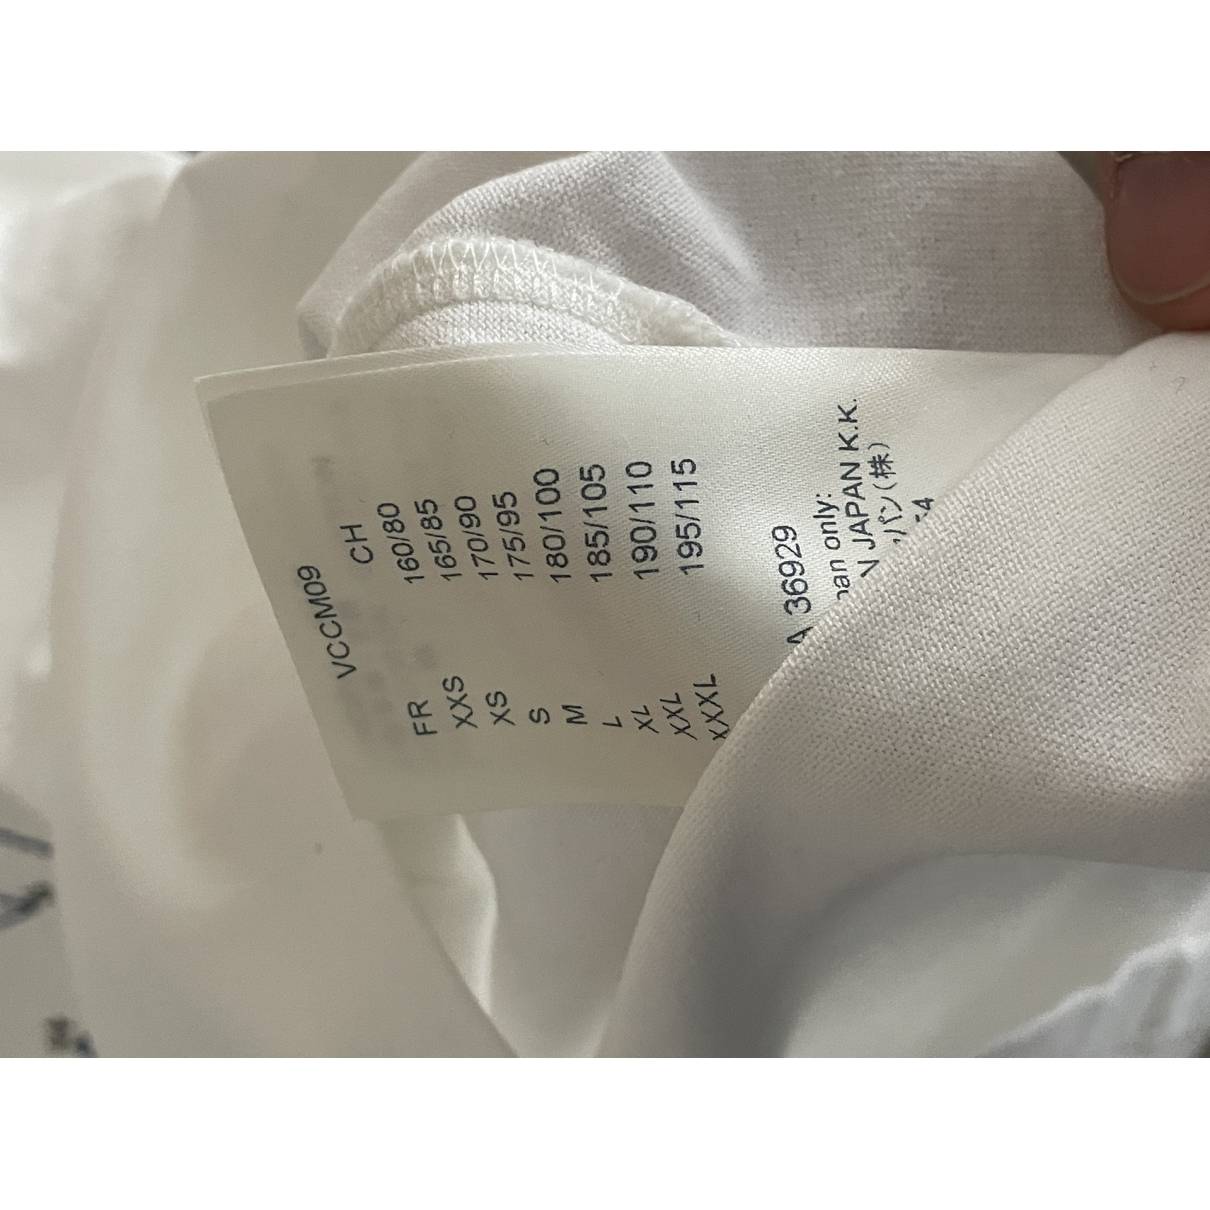 Shirt Louis Vuitton Multicolour size S International in Cotton - 37178960